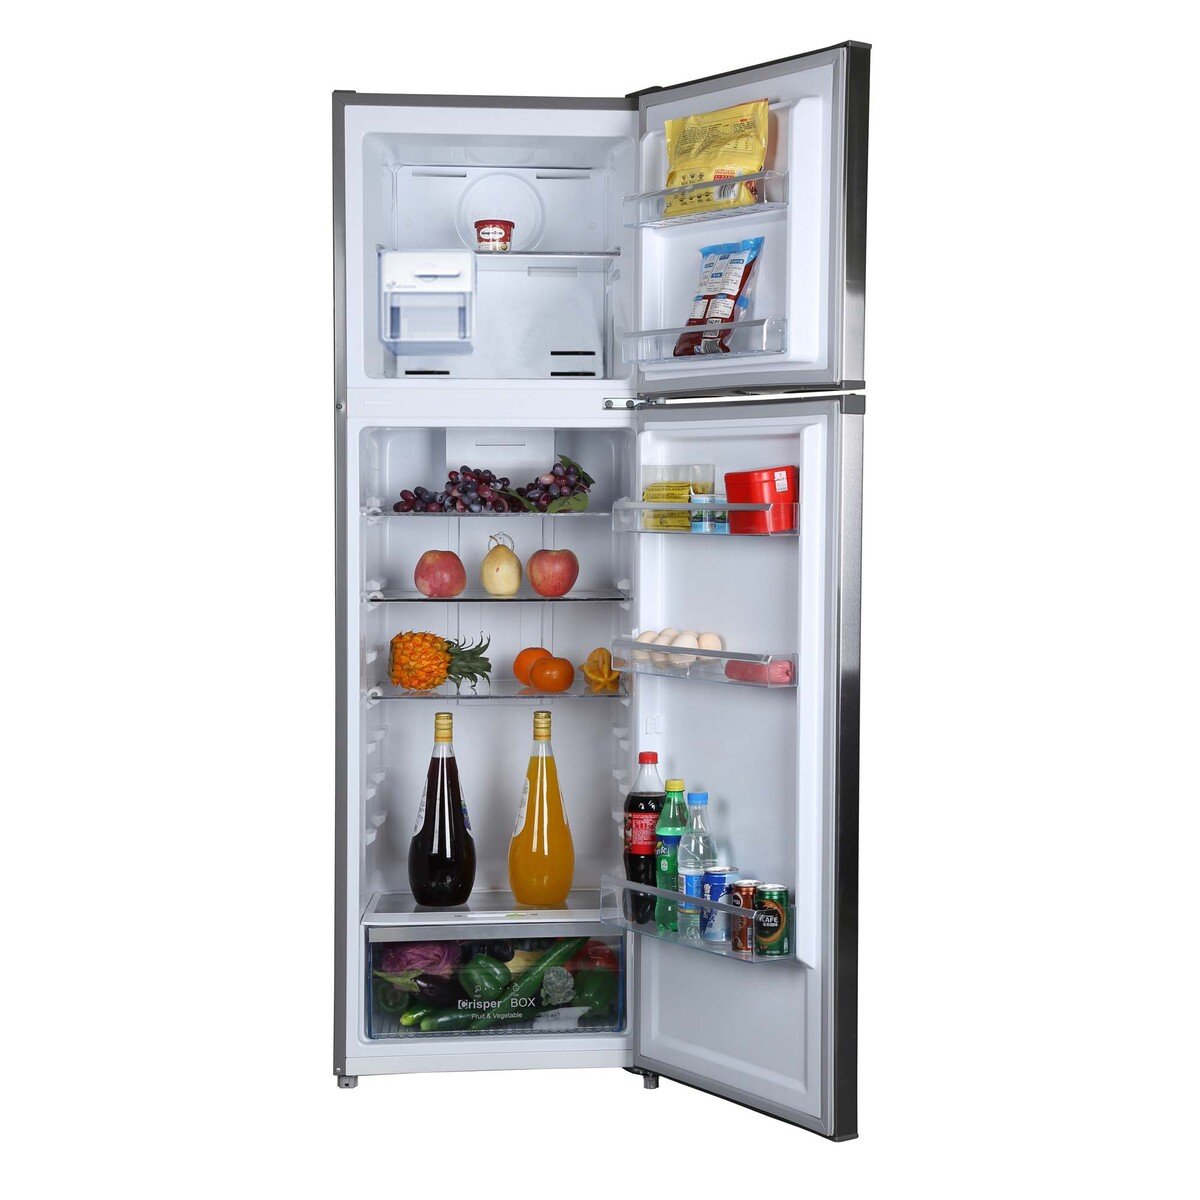 Westpoint Double Door Refrigerator WNN-3518ERI 254LTR